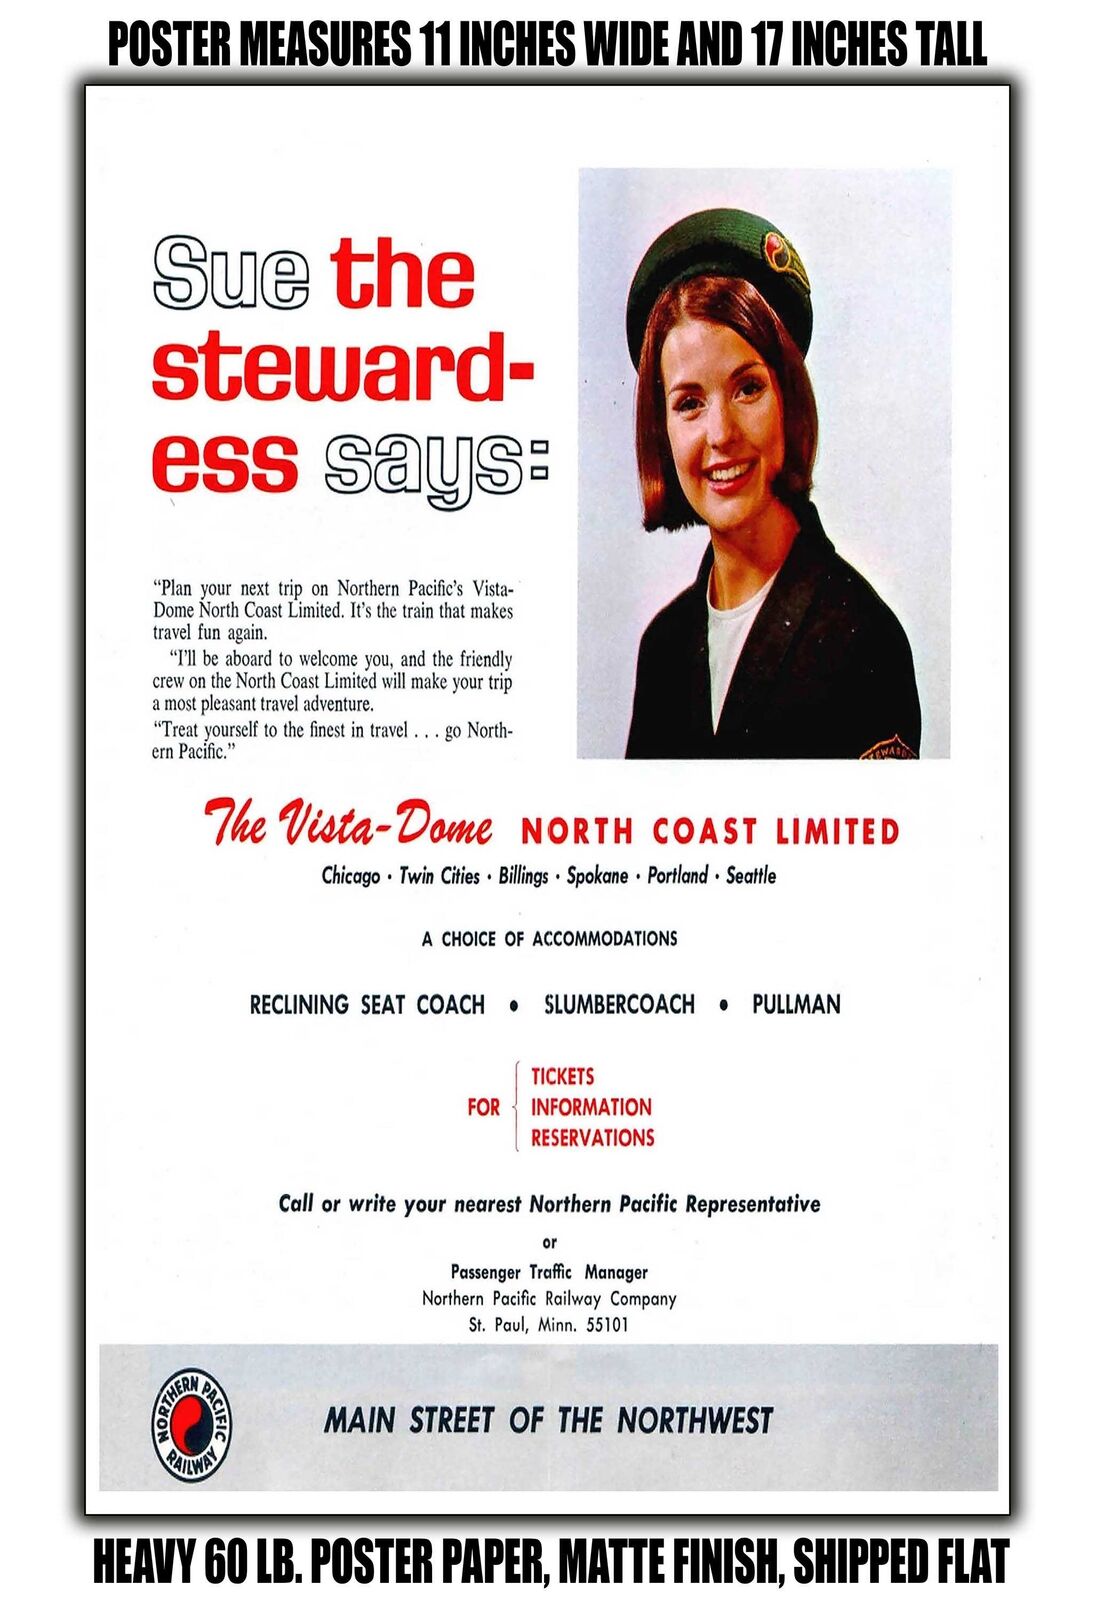 11x17 POSTER - 1965 Vista Dome North Coast Limited: Stewardess Sue